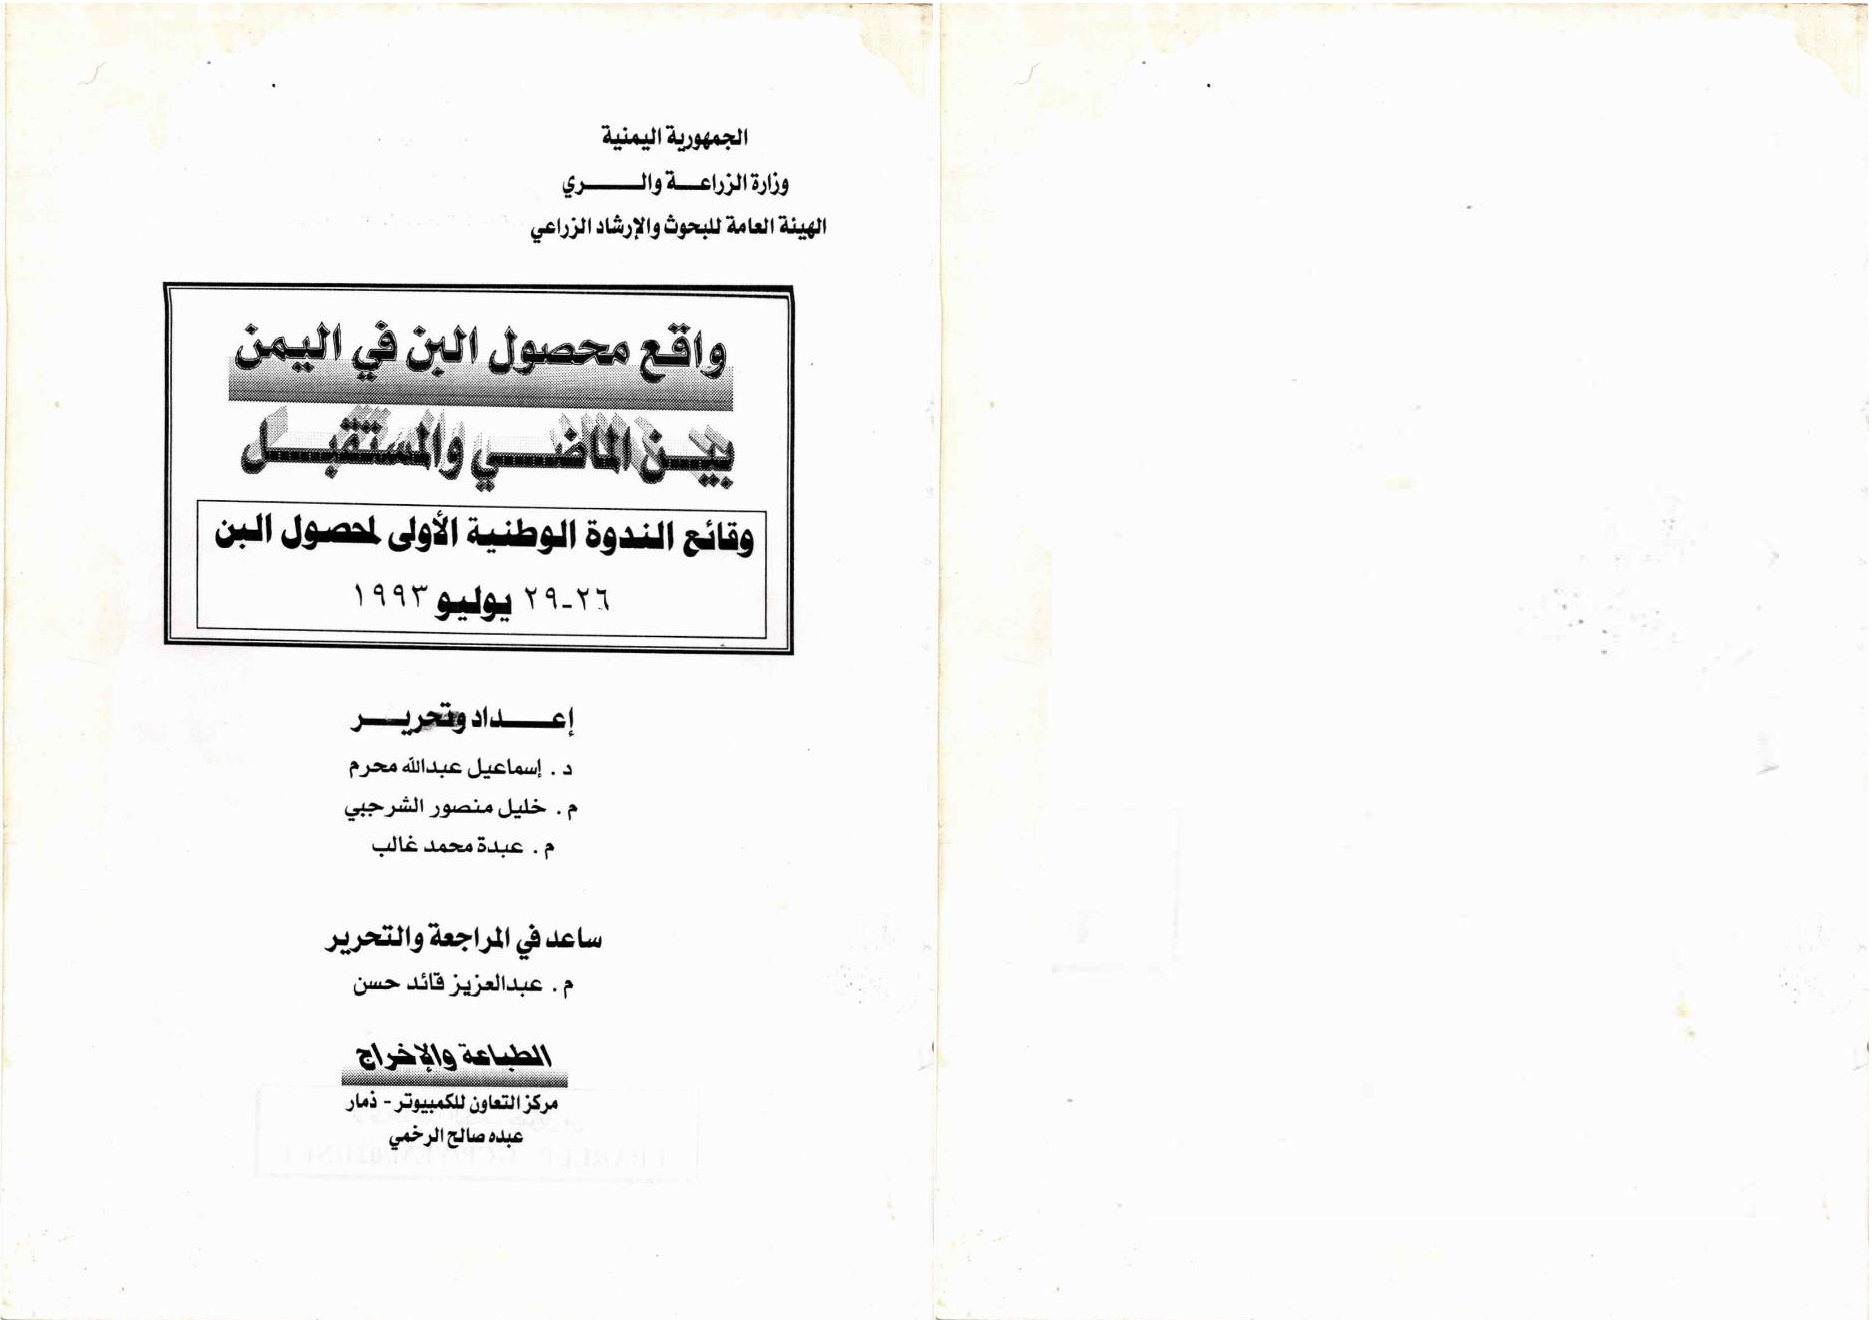 واقع محصول البن في اليمن بين الماضي والمستقبل وقائع الندوة الوطنية الاولى لمحصول البن يوليو 1993م